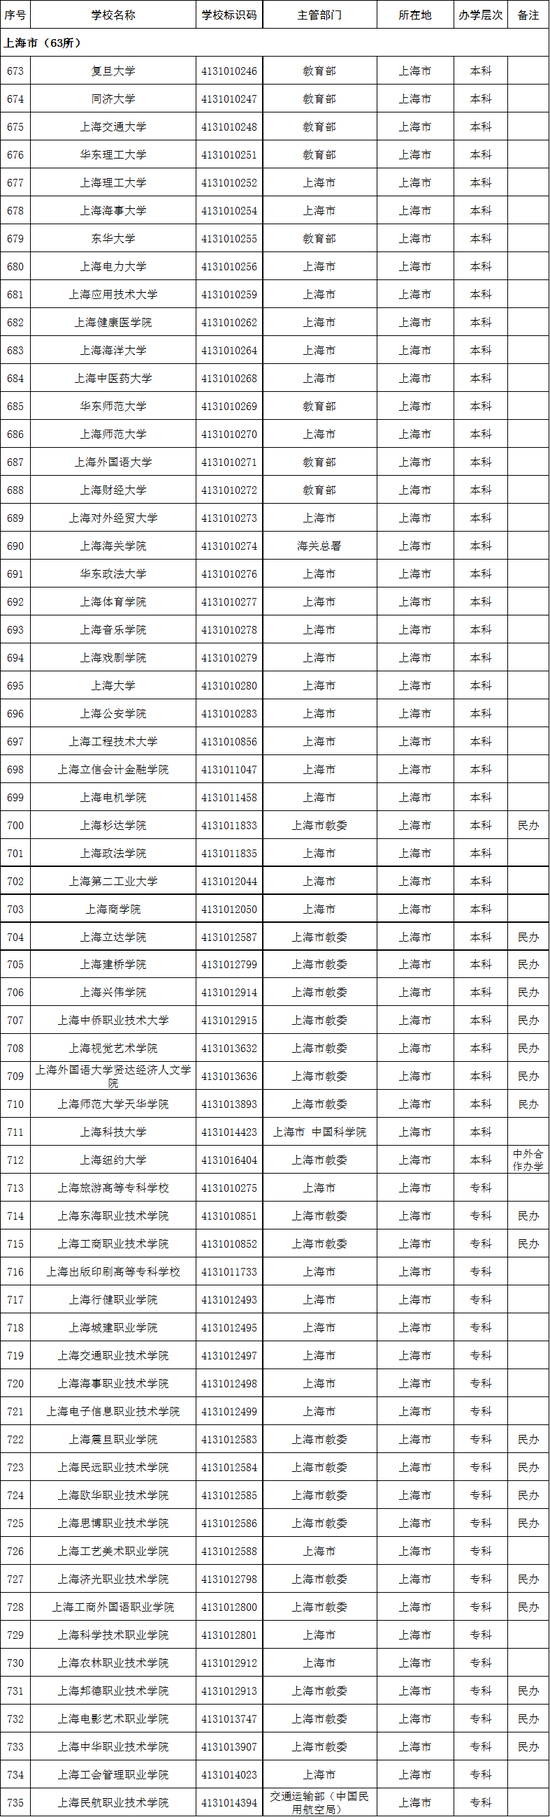 2020年上海市高校名单(63所)